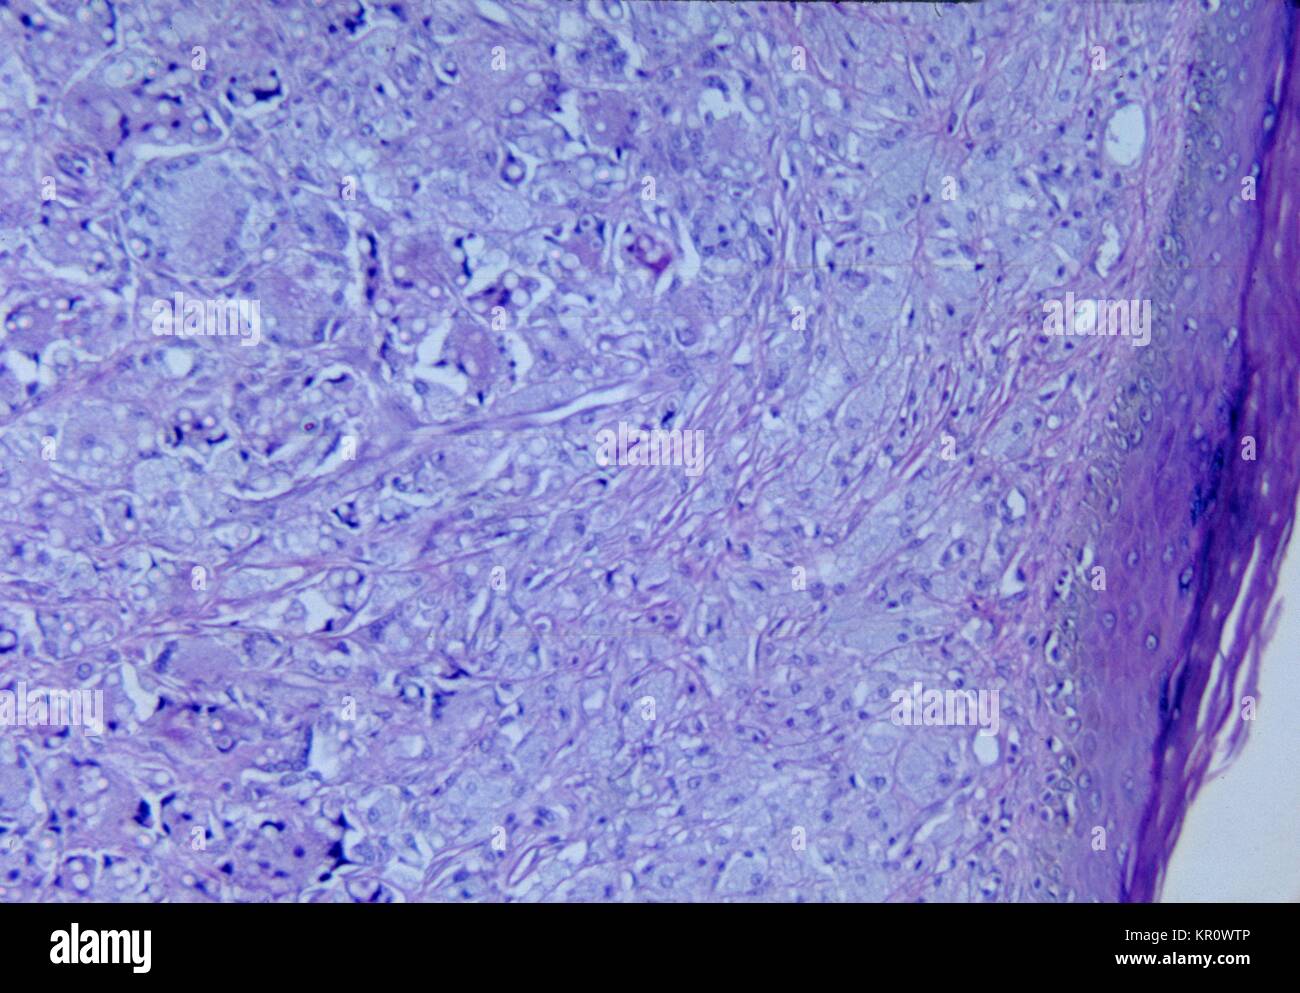 Tale micrografia mostra le variazioni istopatologiche associate con lobomycosis della pelle, 1965. Questa cronica infezione fungina è causato dal fungo Lacazia loboi, precedentemente denominato Loboa loboi, ed è caratterizzato dal fatto di keloidal nodulari lesioni che si verificano sul viso, orecchie, o delle estremità. Questa malattia è di solito si trova negli esseri umani e bottiglia di delfini dal naso a. Immagine cortesia CDC/Dott. Martin Hicklin. Foto Stock